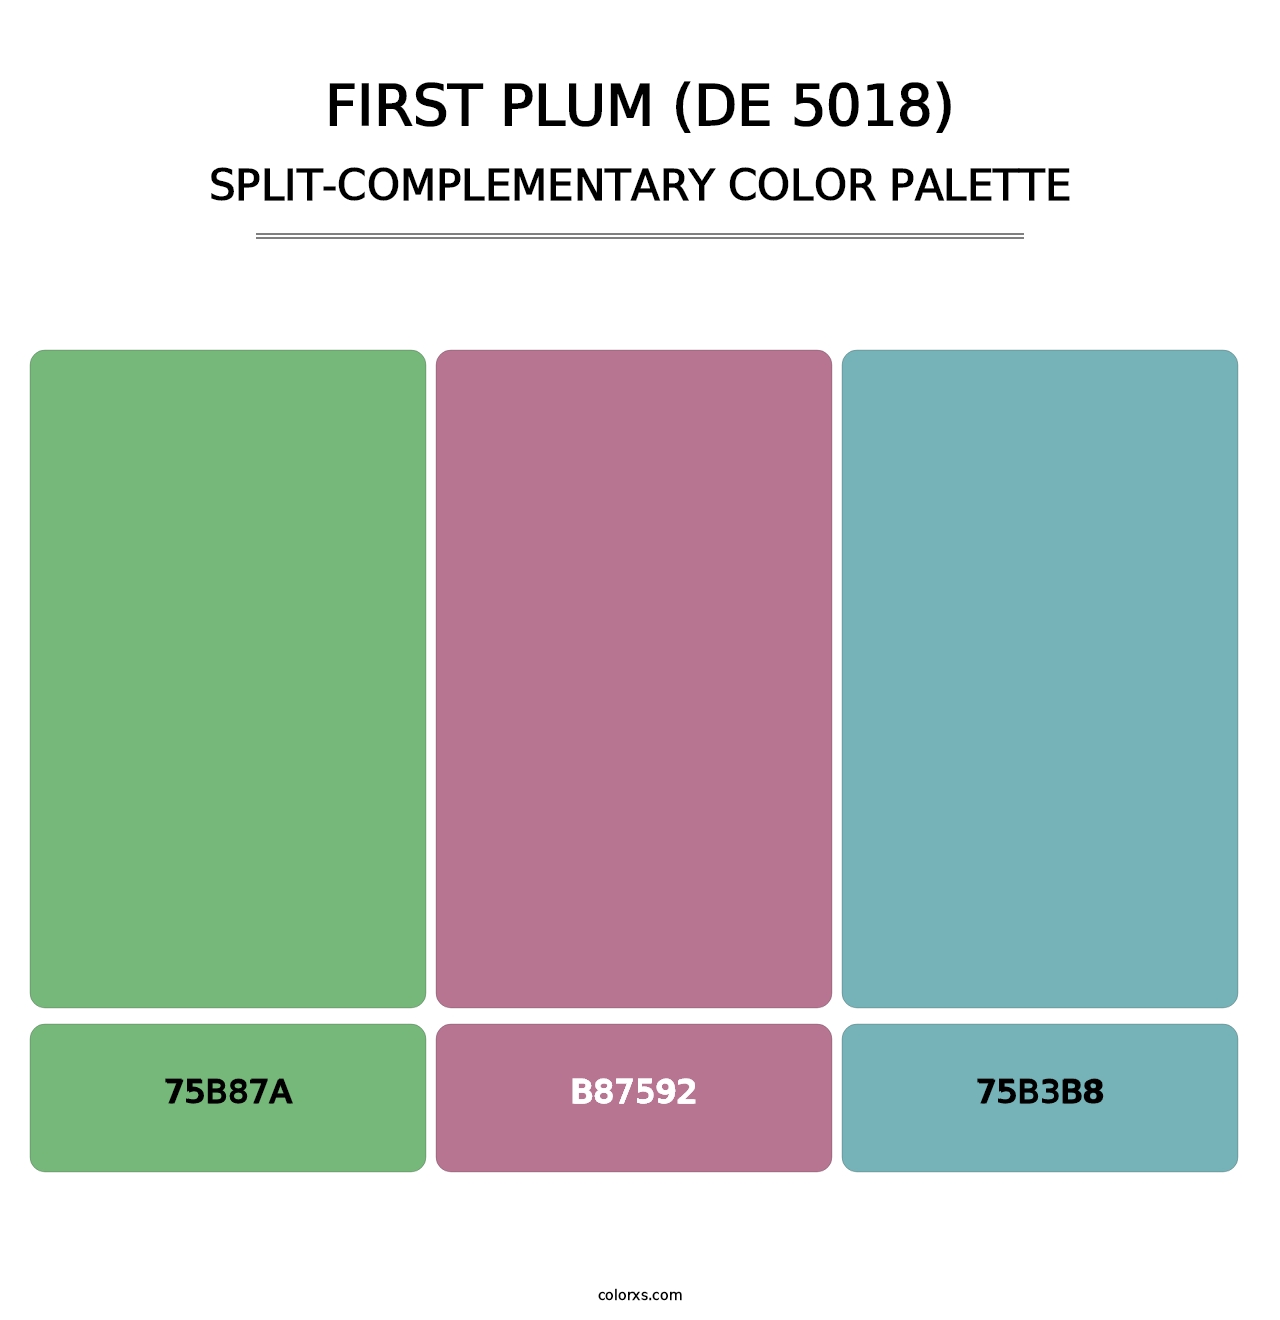 First Plum (DE 5018) - Split-Complementary Color Palette